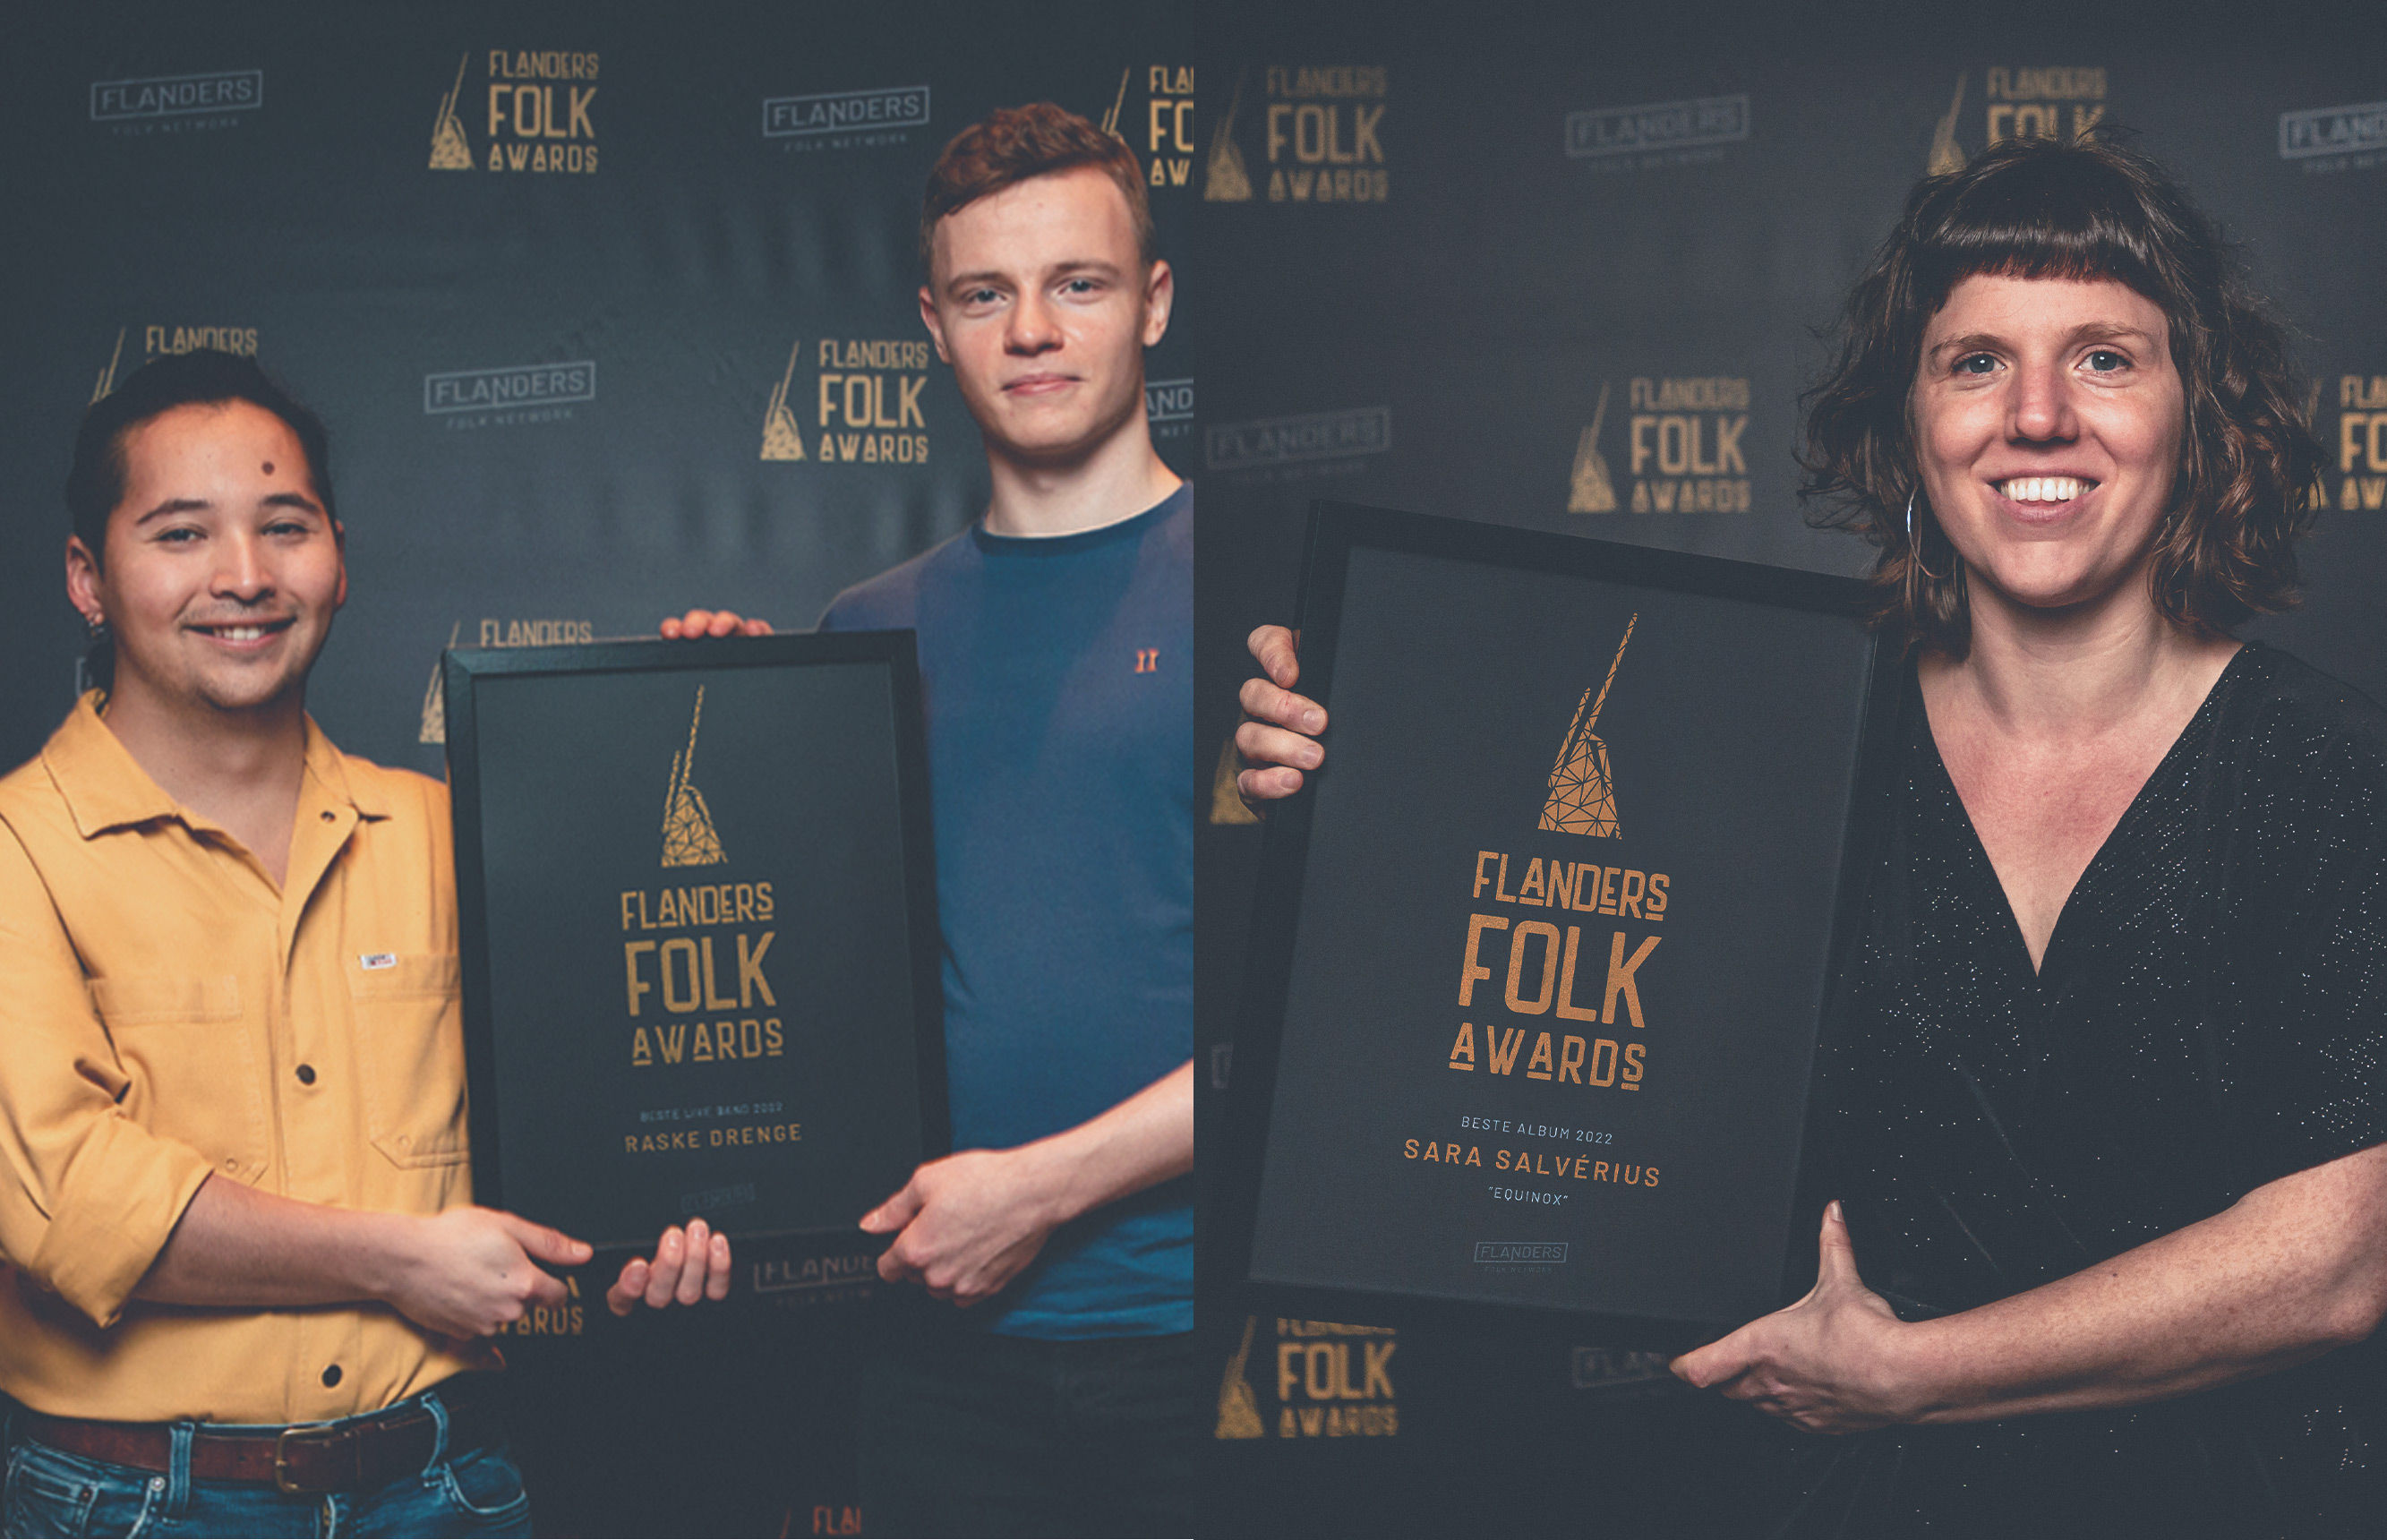 Winnaars Flanders Folk Awards 2022 bekend: Raske Drenge & Sara Salverius